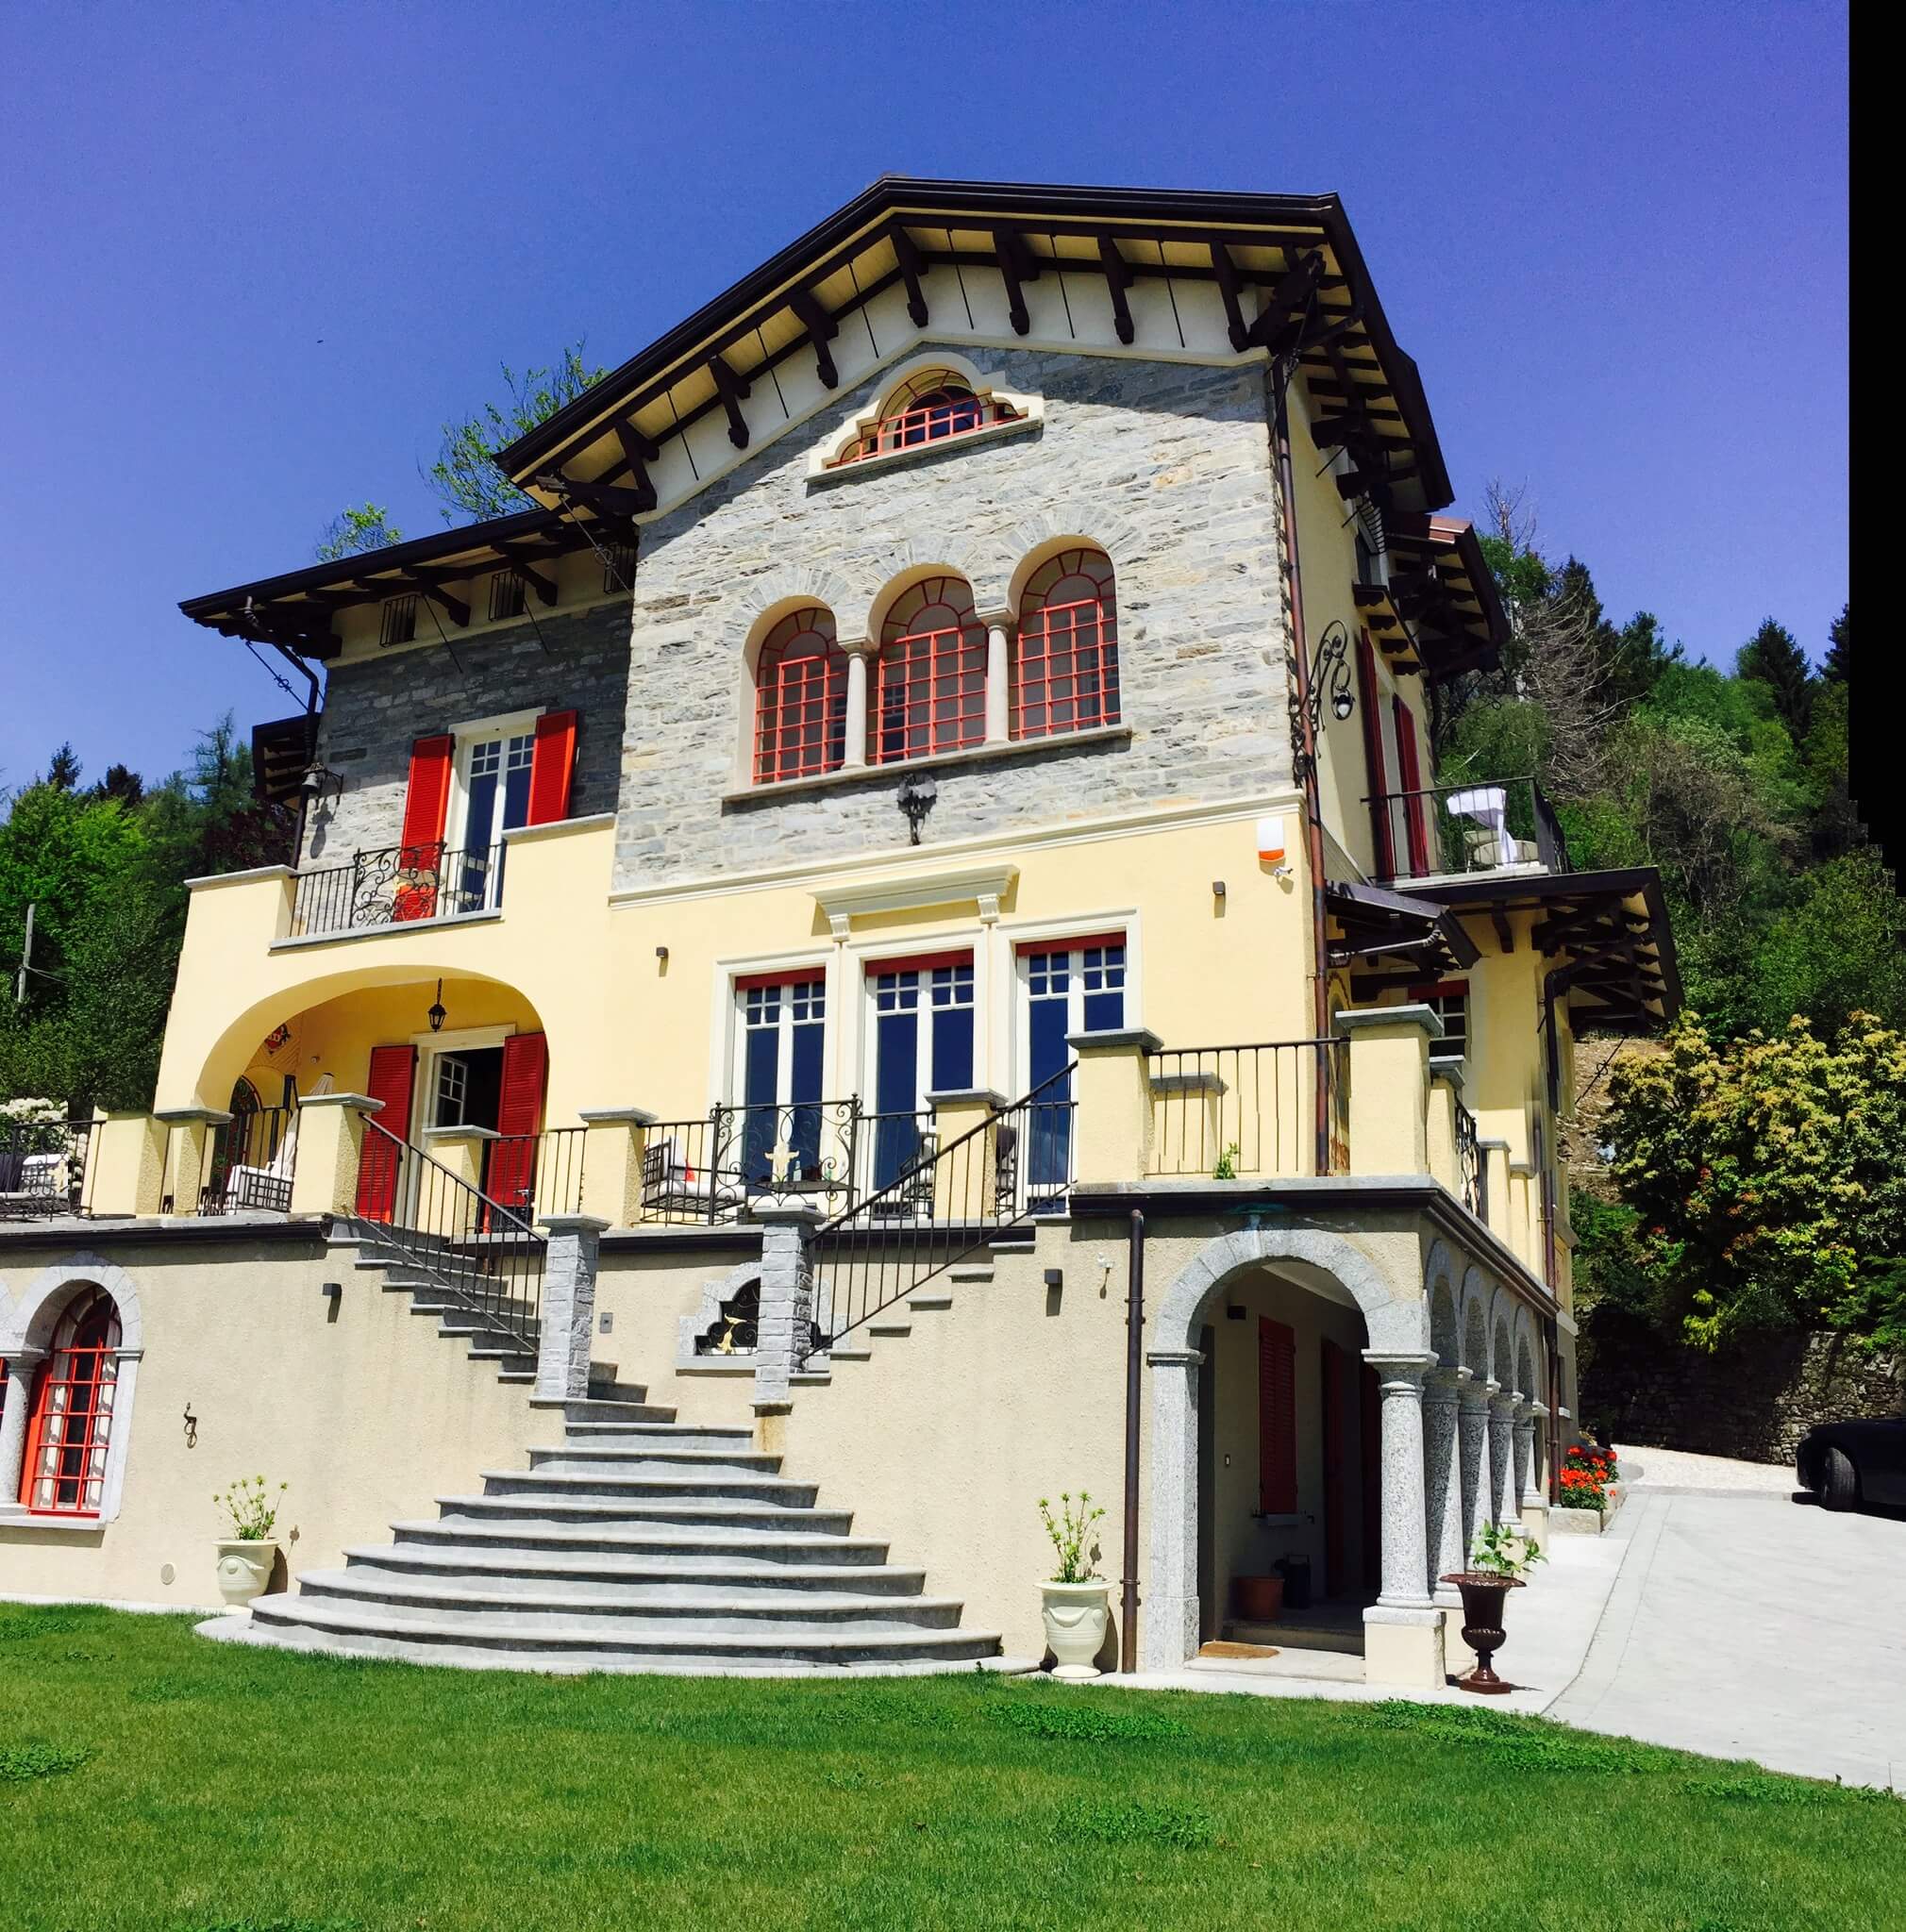 Welcome to Villa Confalonieri